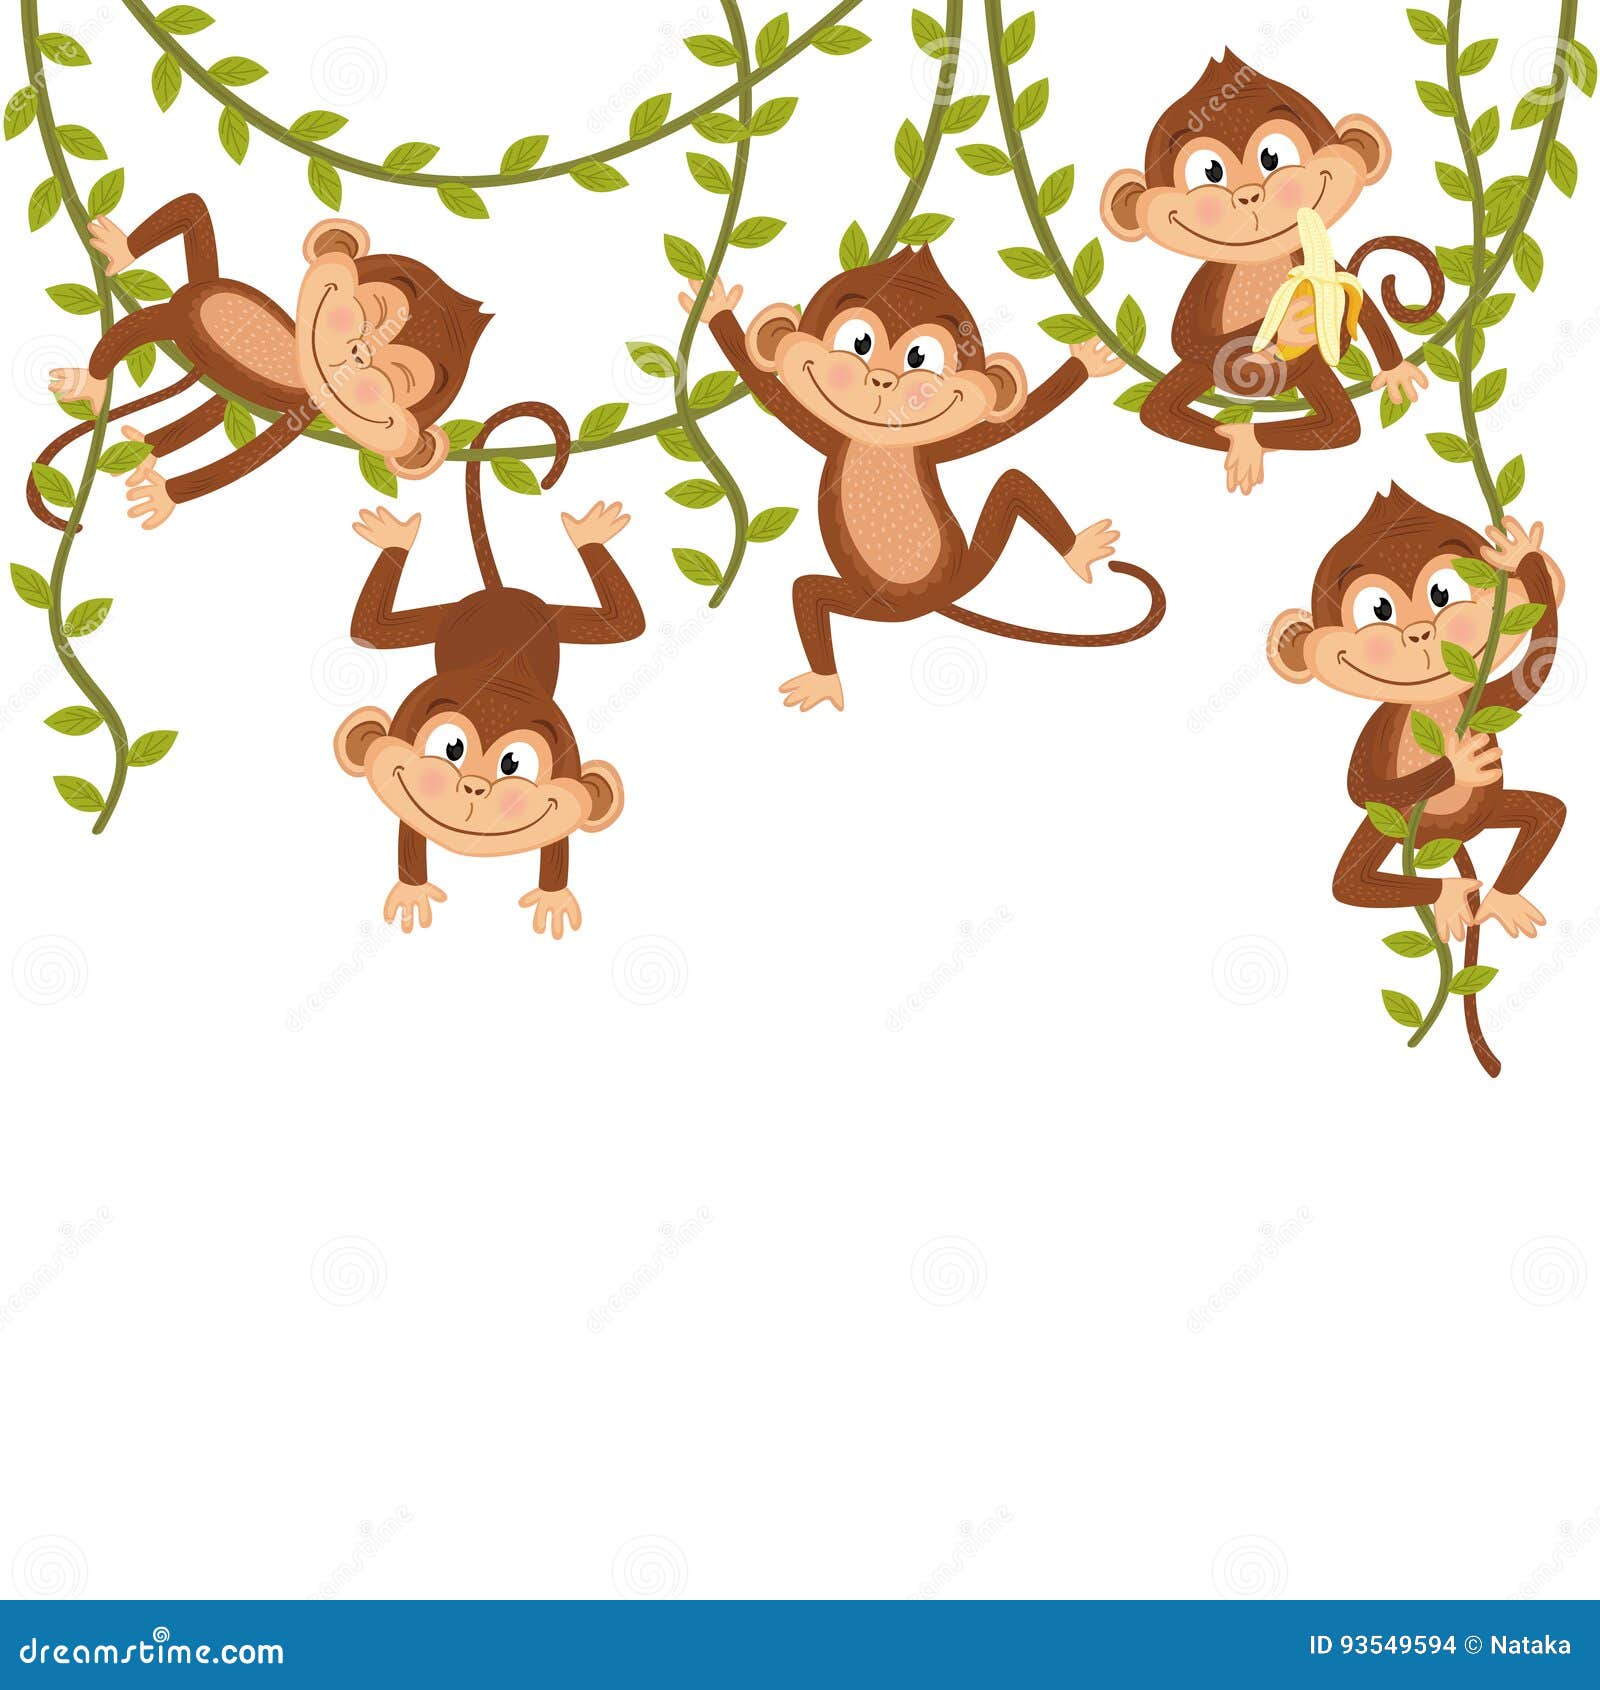 monkey on vine